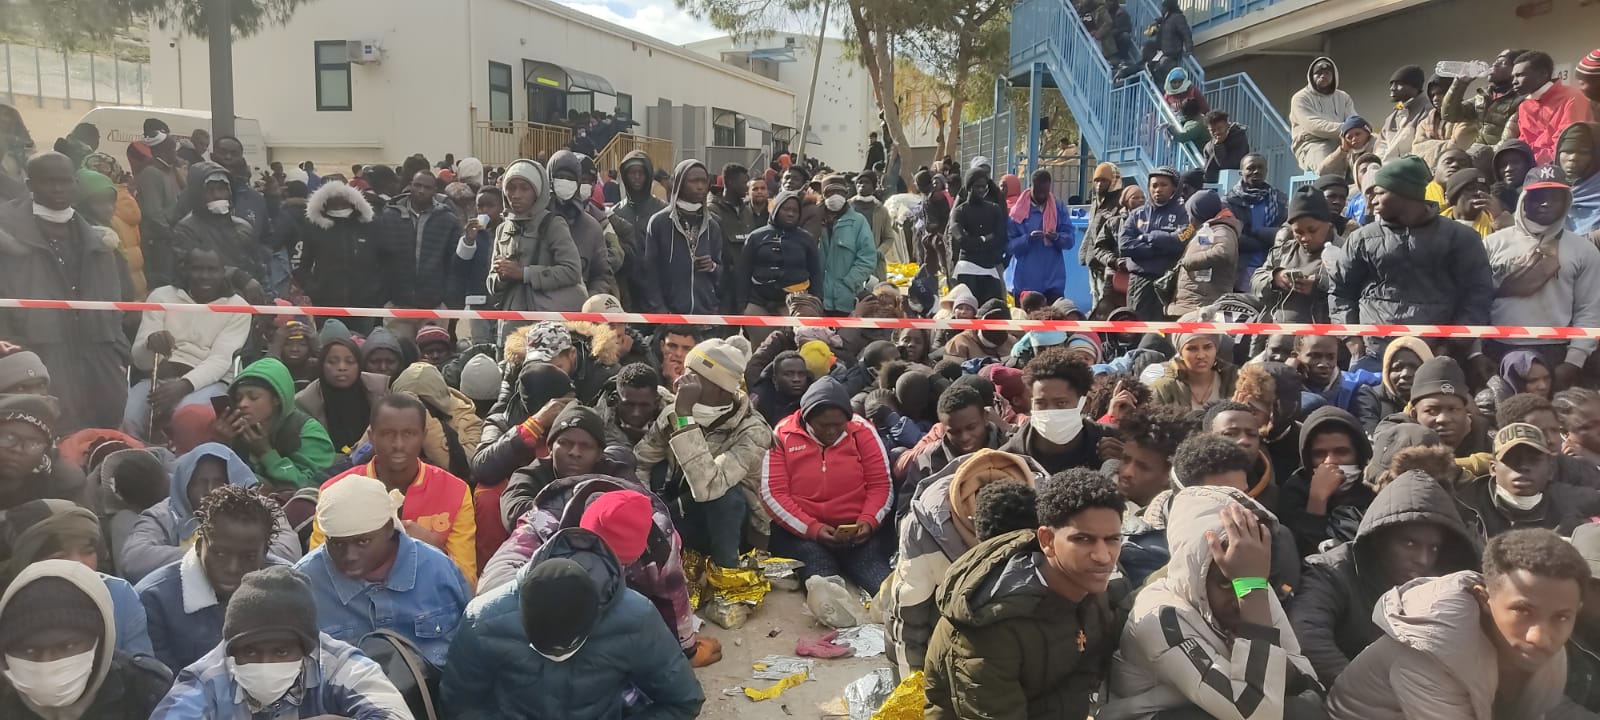 Lampedusa in balìa degli sbarchi, poliziotti allo stremo: la SIAP valuta un esposto